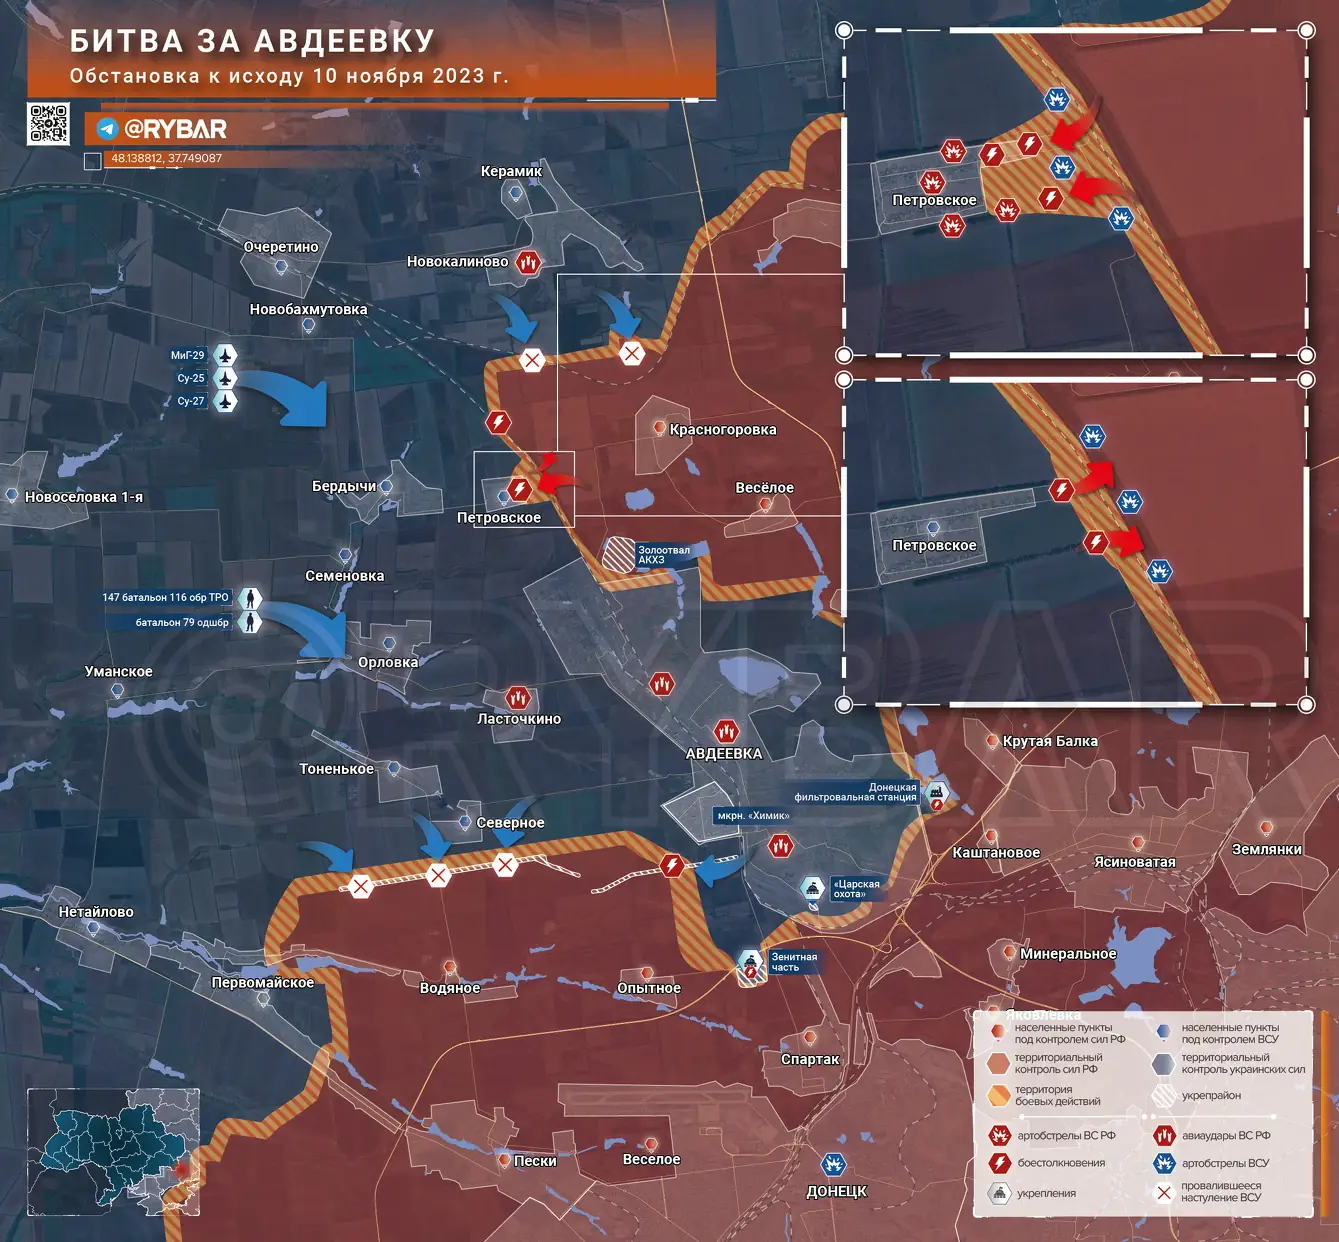 Битва за Авдеевку: безуспешные контратаки ВСУ и их огромные потери